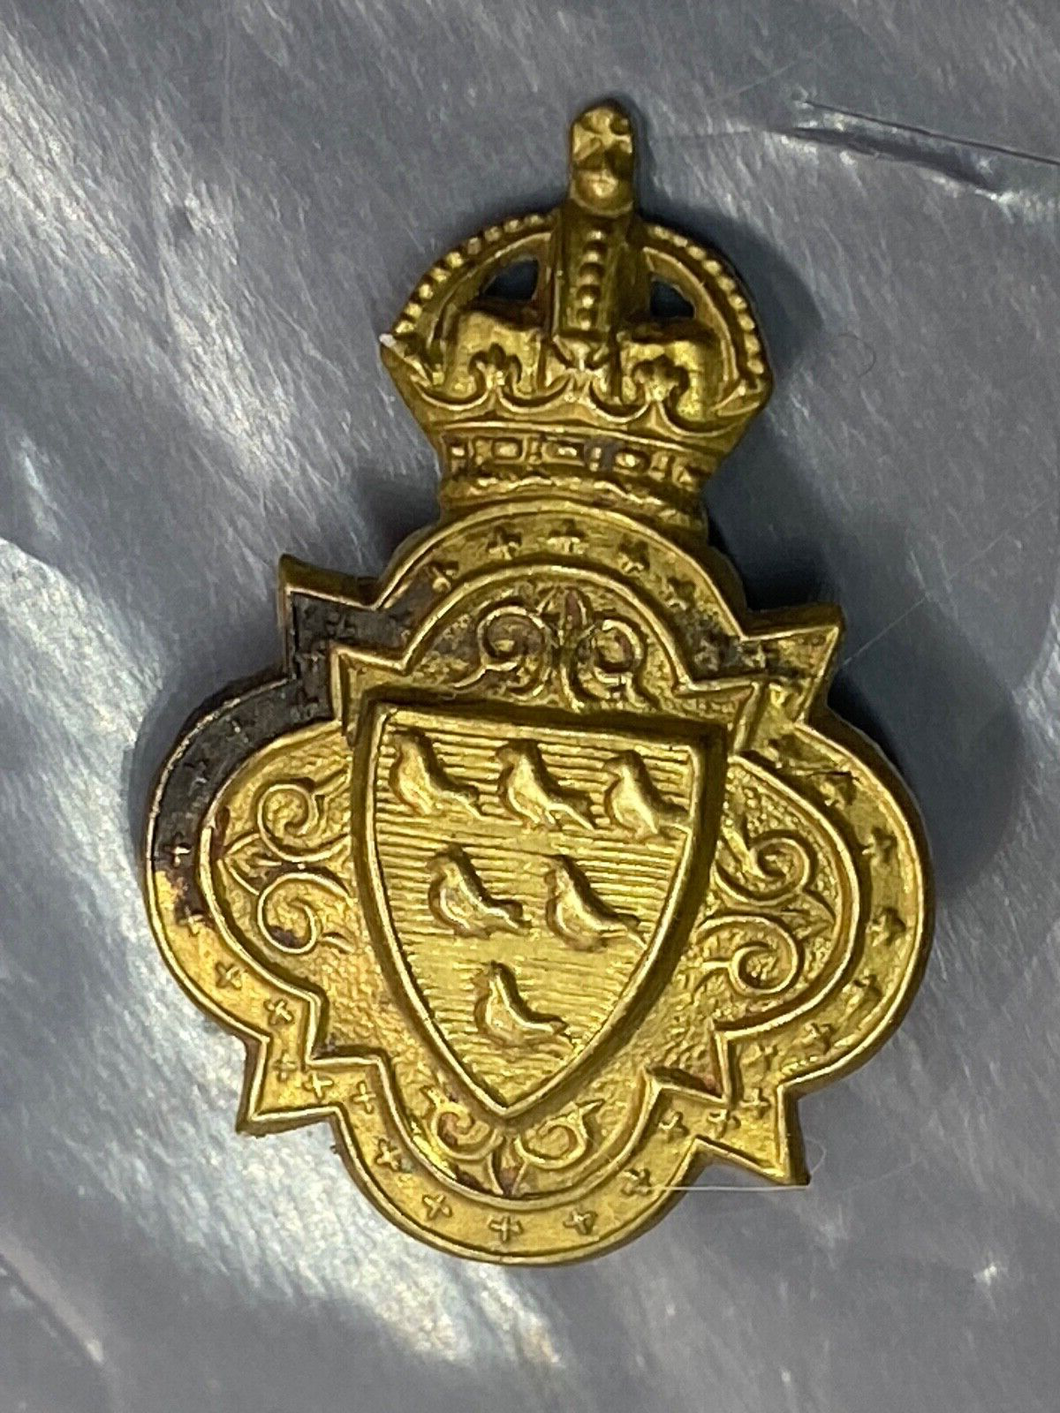 Original WW1 British Army Sussex Imperial Yeomanry Cap Badge - Circa 1899-1908